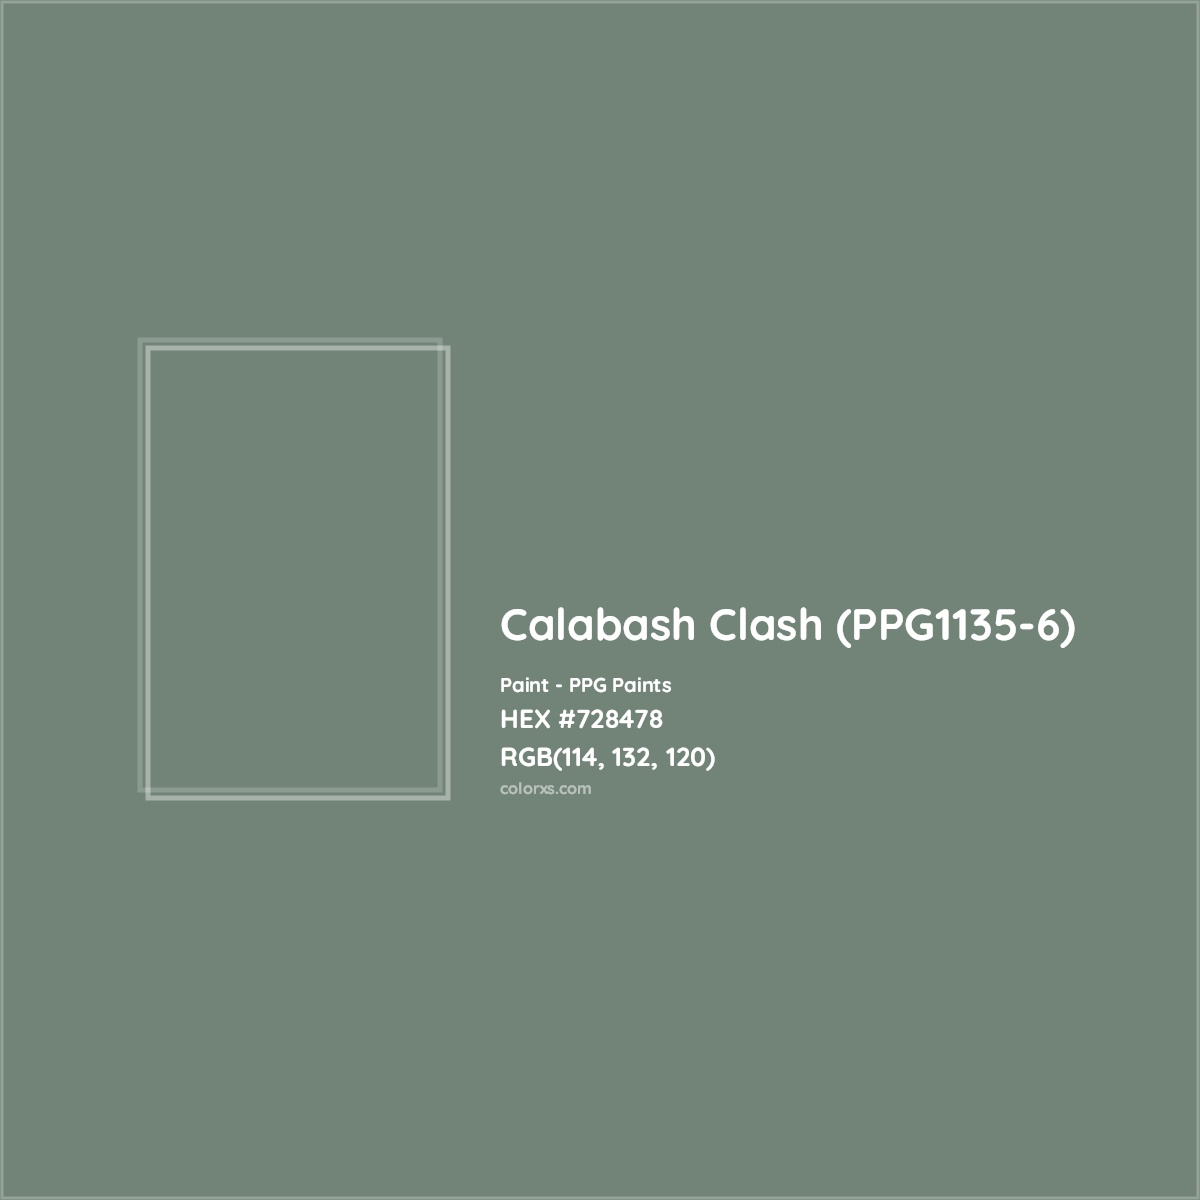 HEX #728478 Calabash Clash (PPG1135-6) Paint PPG Paints - Color Code